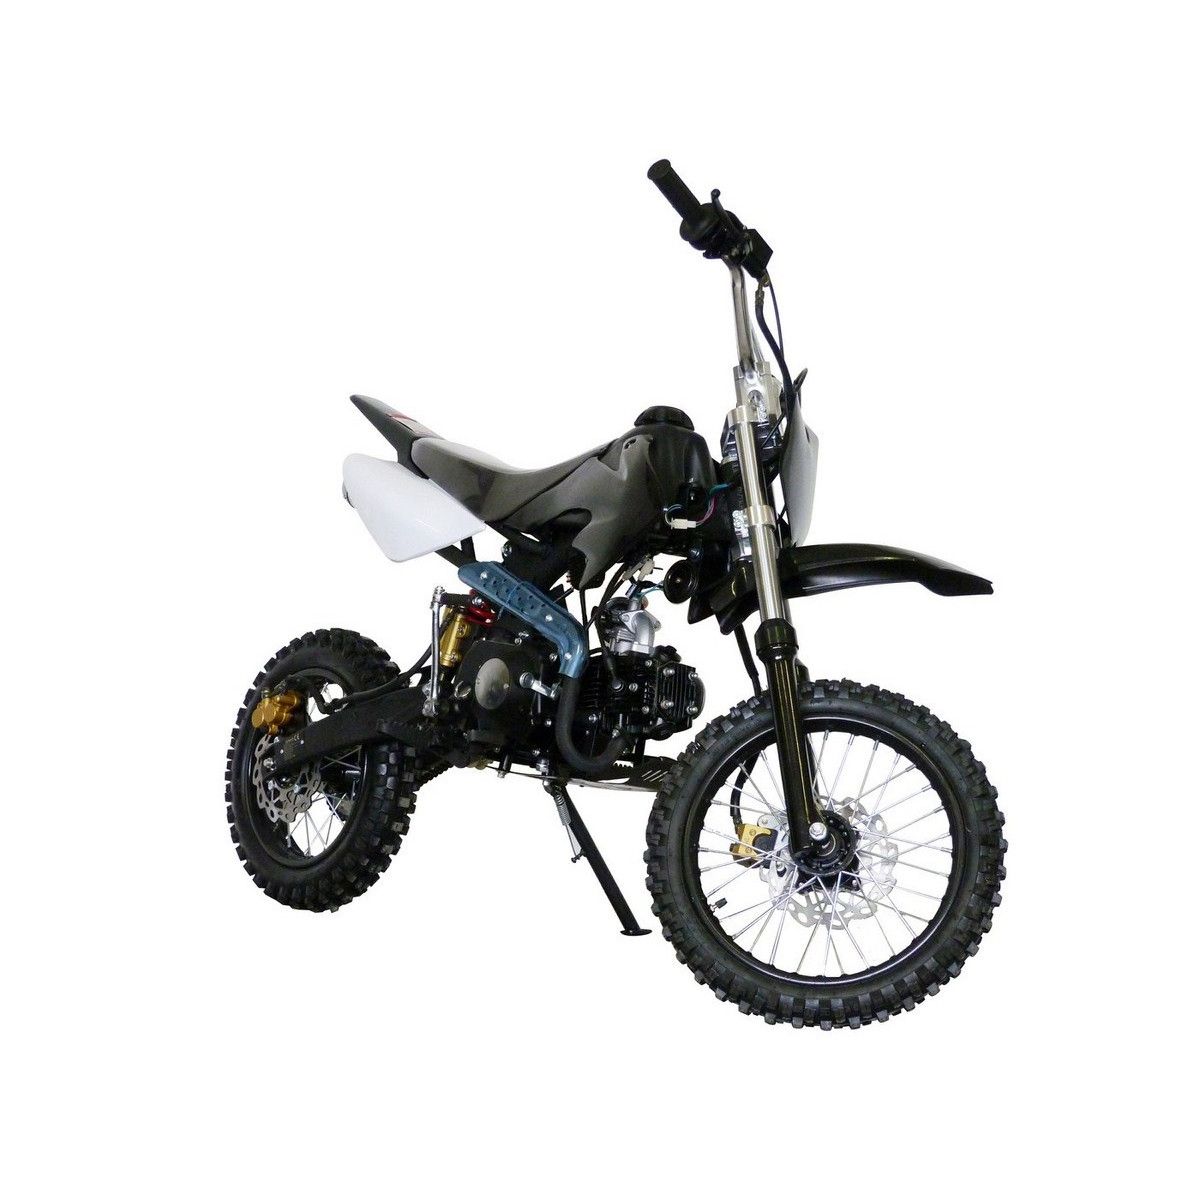 125cc DB 607 Dirt bike KXD Moto